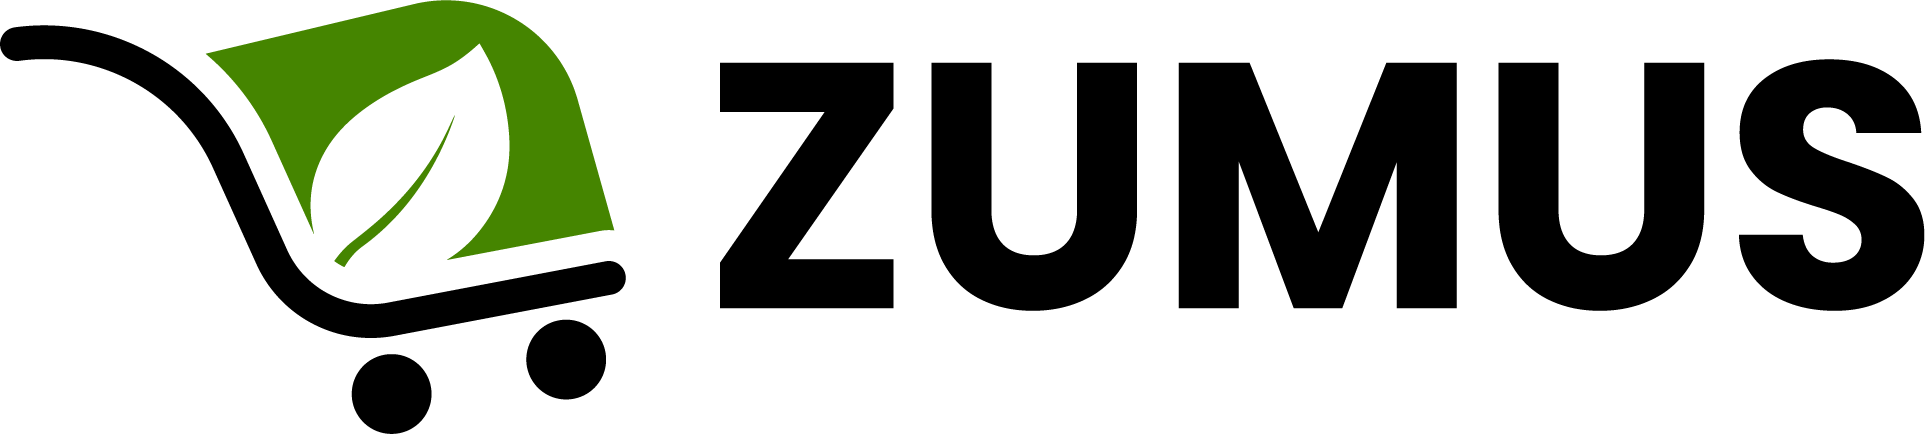 Zumus.ru | витамины, добавки, товары для красоты и здоровья